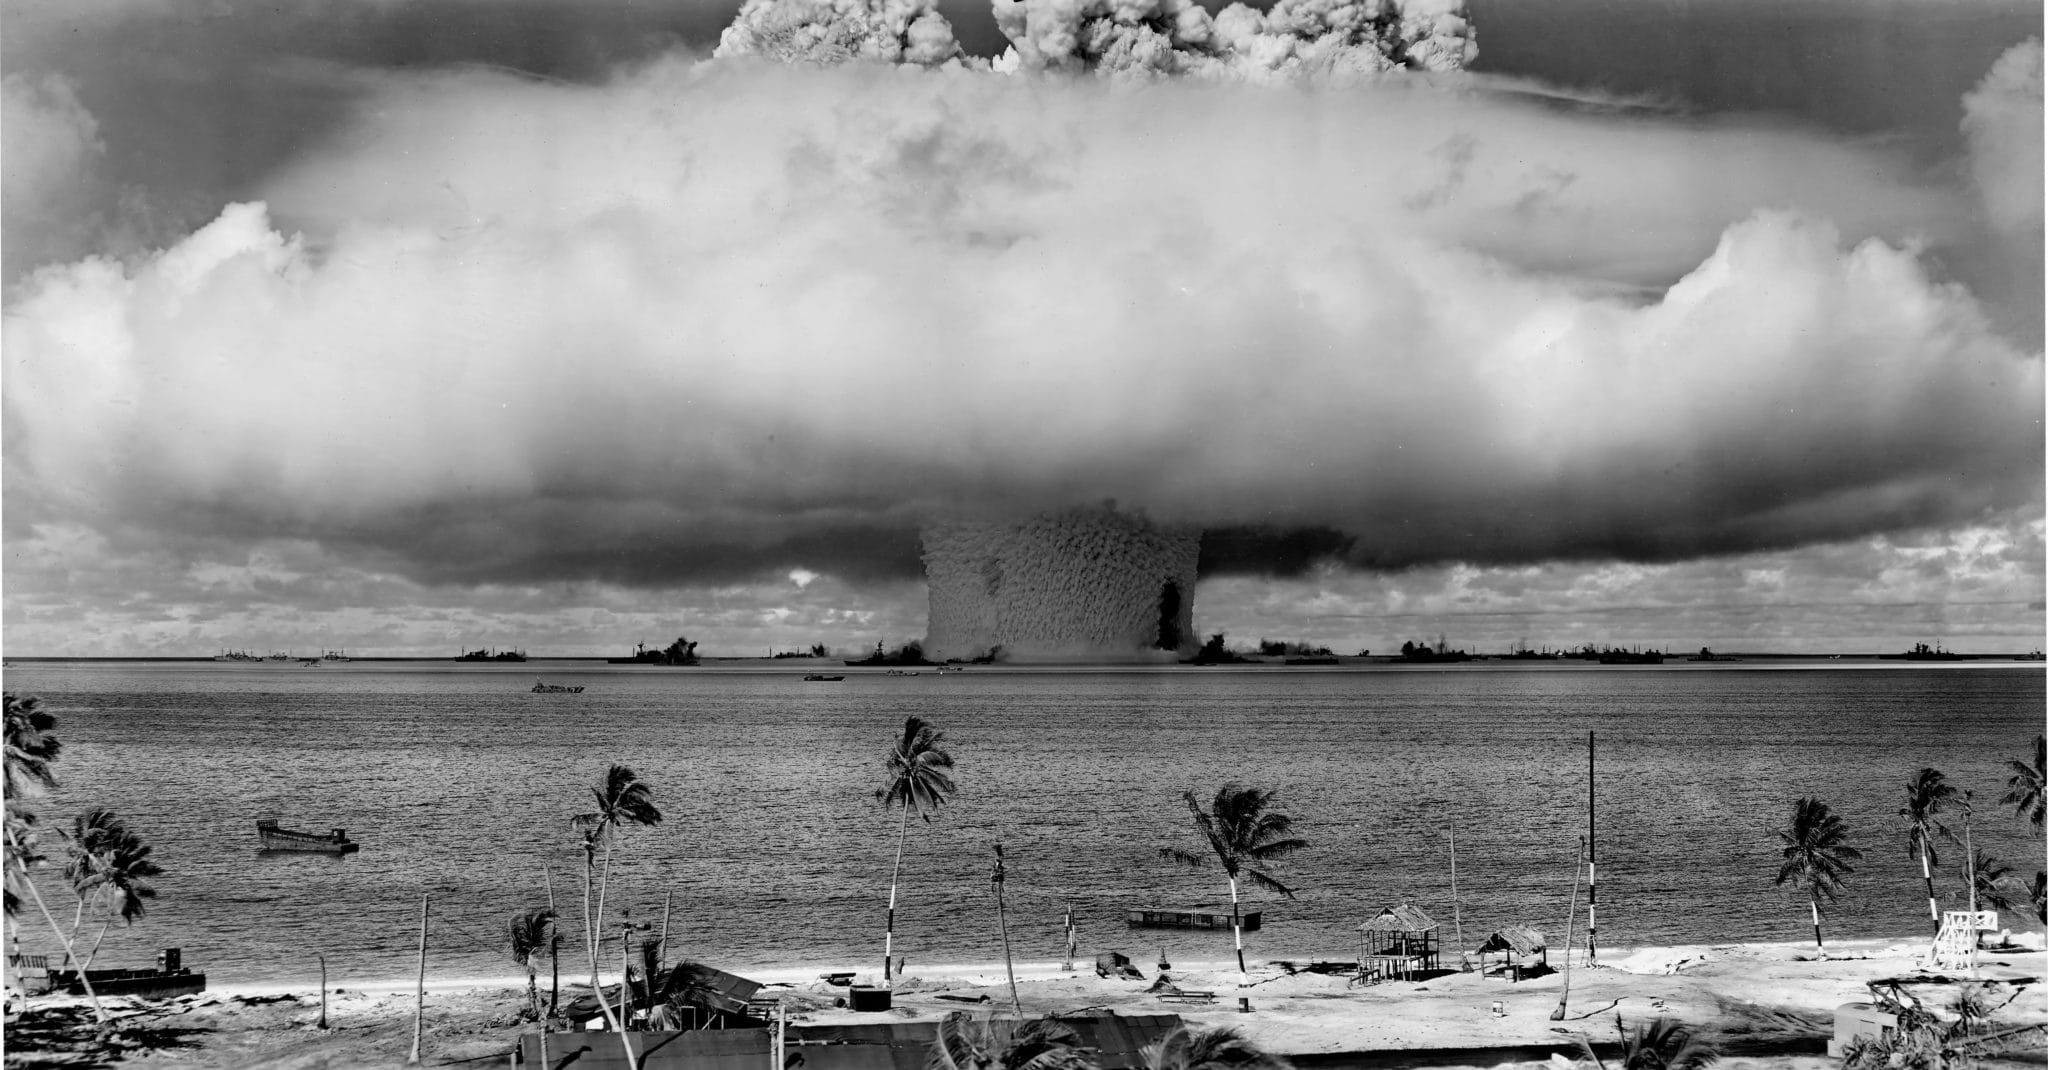 Tra il 1946 e il 1958 gli Stati Uniti effettuarono una serie di test nucleari sull'isola di Bikini nel Pacifico. Immagine ripresa da Wikipedia.